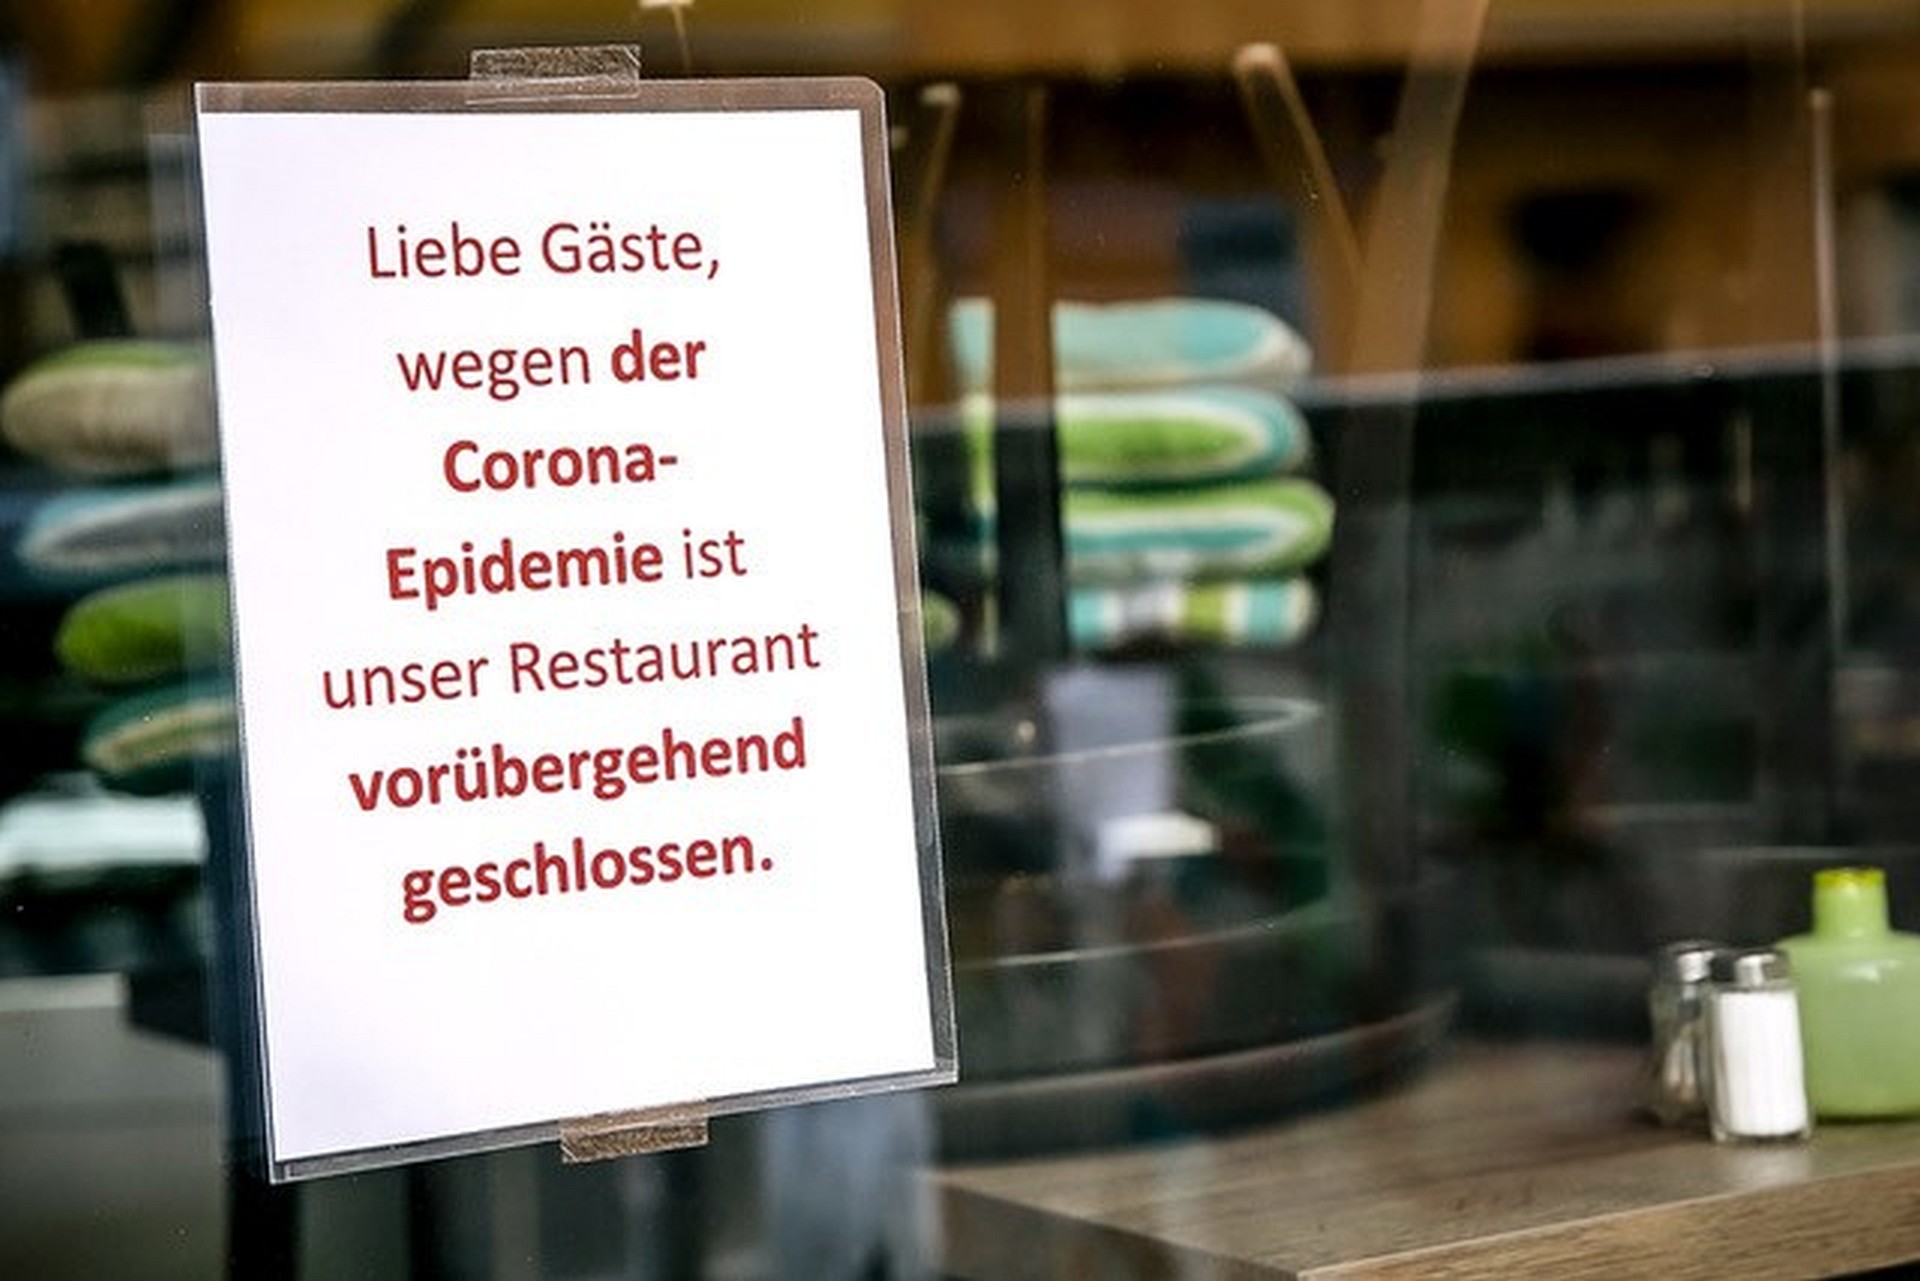 Wegen Corona geschlossen: Restaurants, Gaststätten und Hotels sind seit Wochen zu. Die Beschäftigten haben nun mit enormen Lohneinbußen zu kämpfen, warnt die Gewerkschaft NGG. Foto: NGG